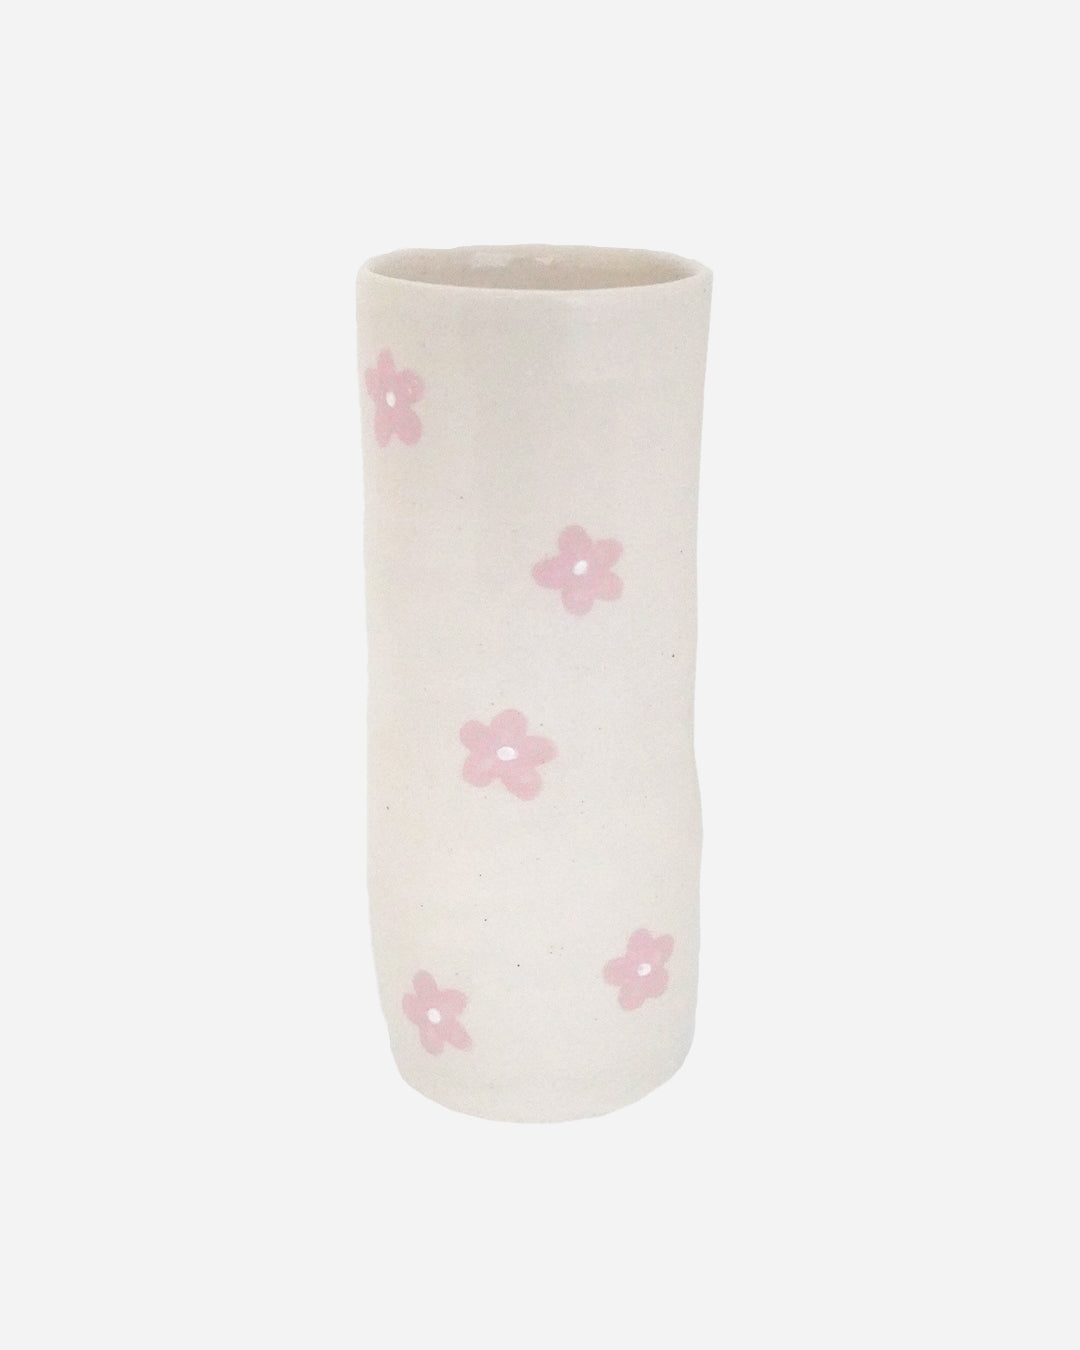 Bloom Vase in Icing Sugar